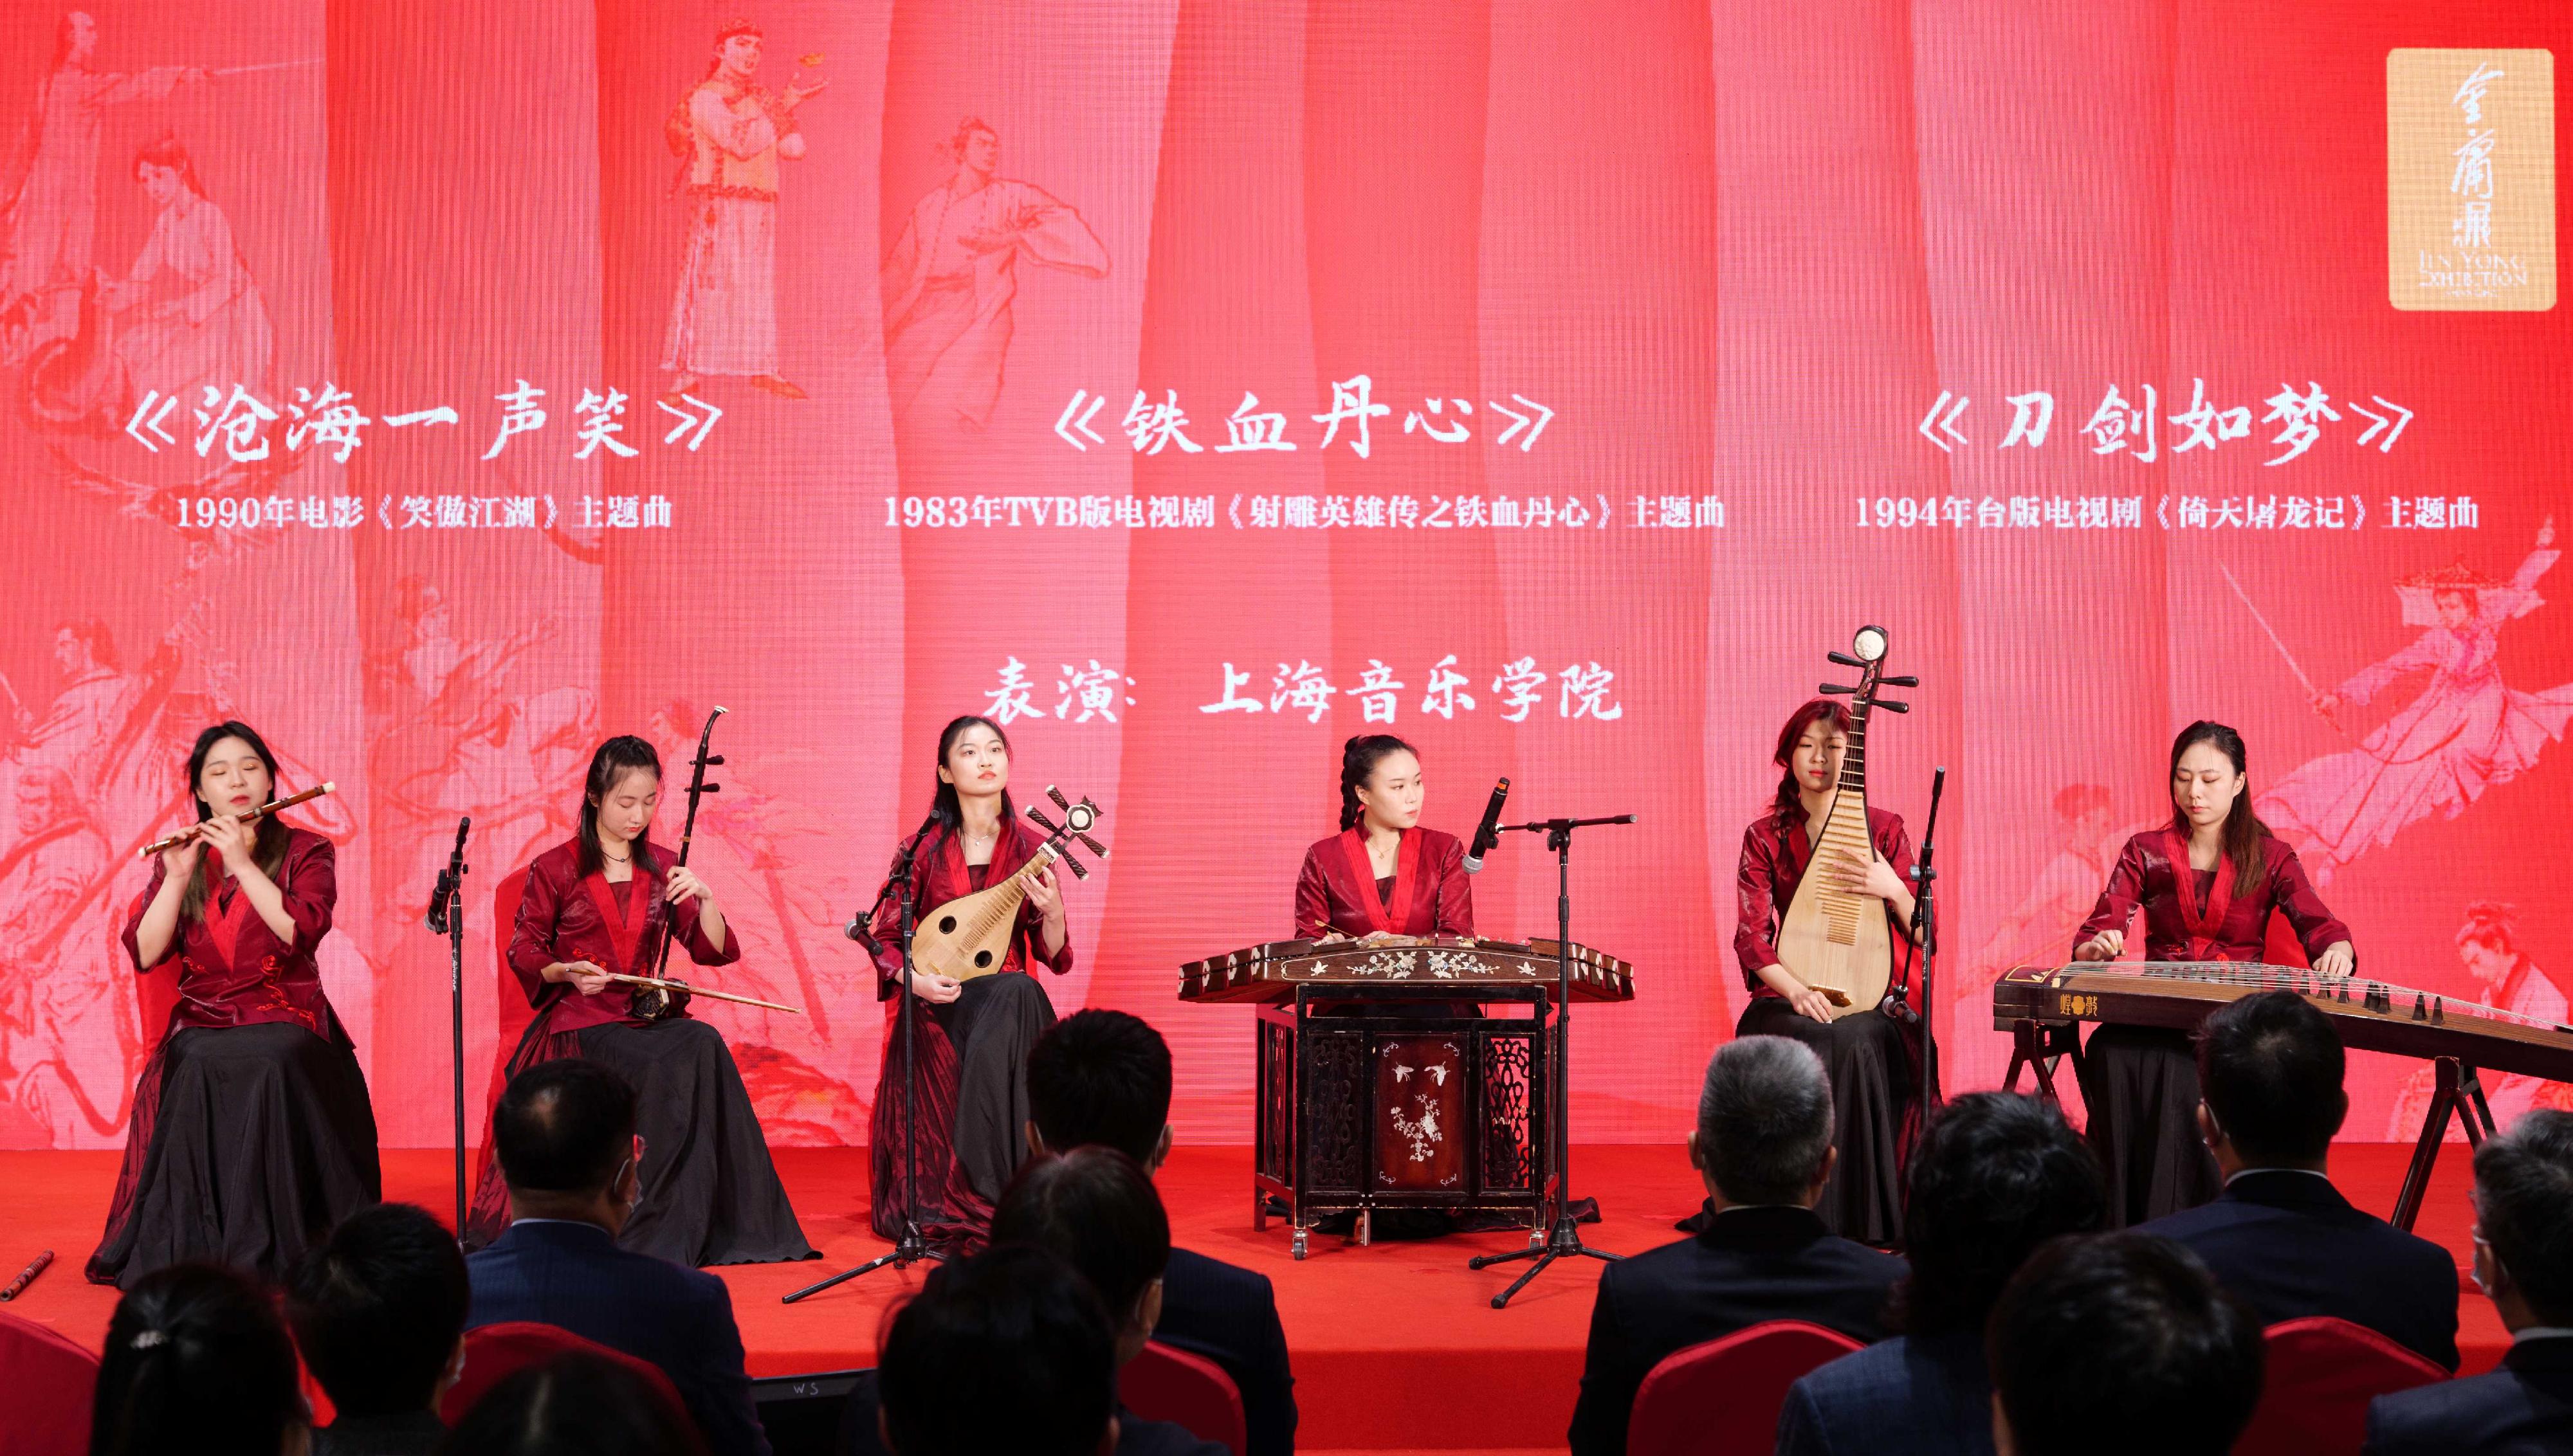 由香港特別行政區政府駐上海經濟貿易辦事處主辦的「金庸展」今日（十月二十八日）於上海市上海圖書館東館揭幕。圖示上海音樂學院的學生在開幕典禮上合奏經典金庸影視金曲。